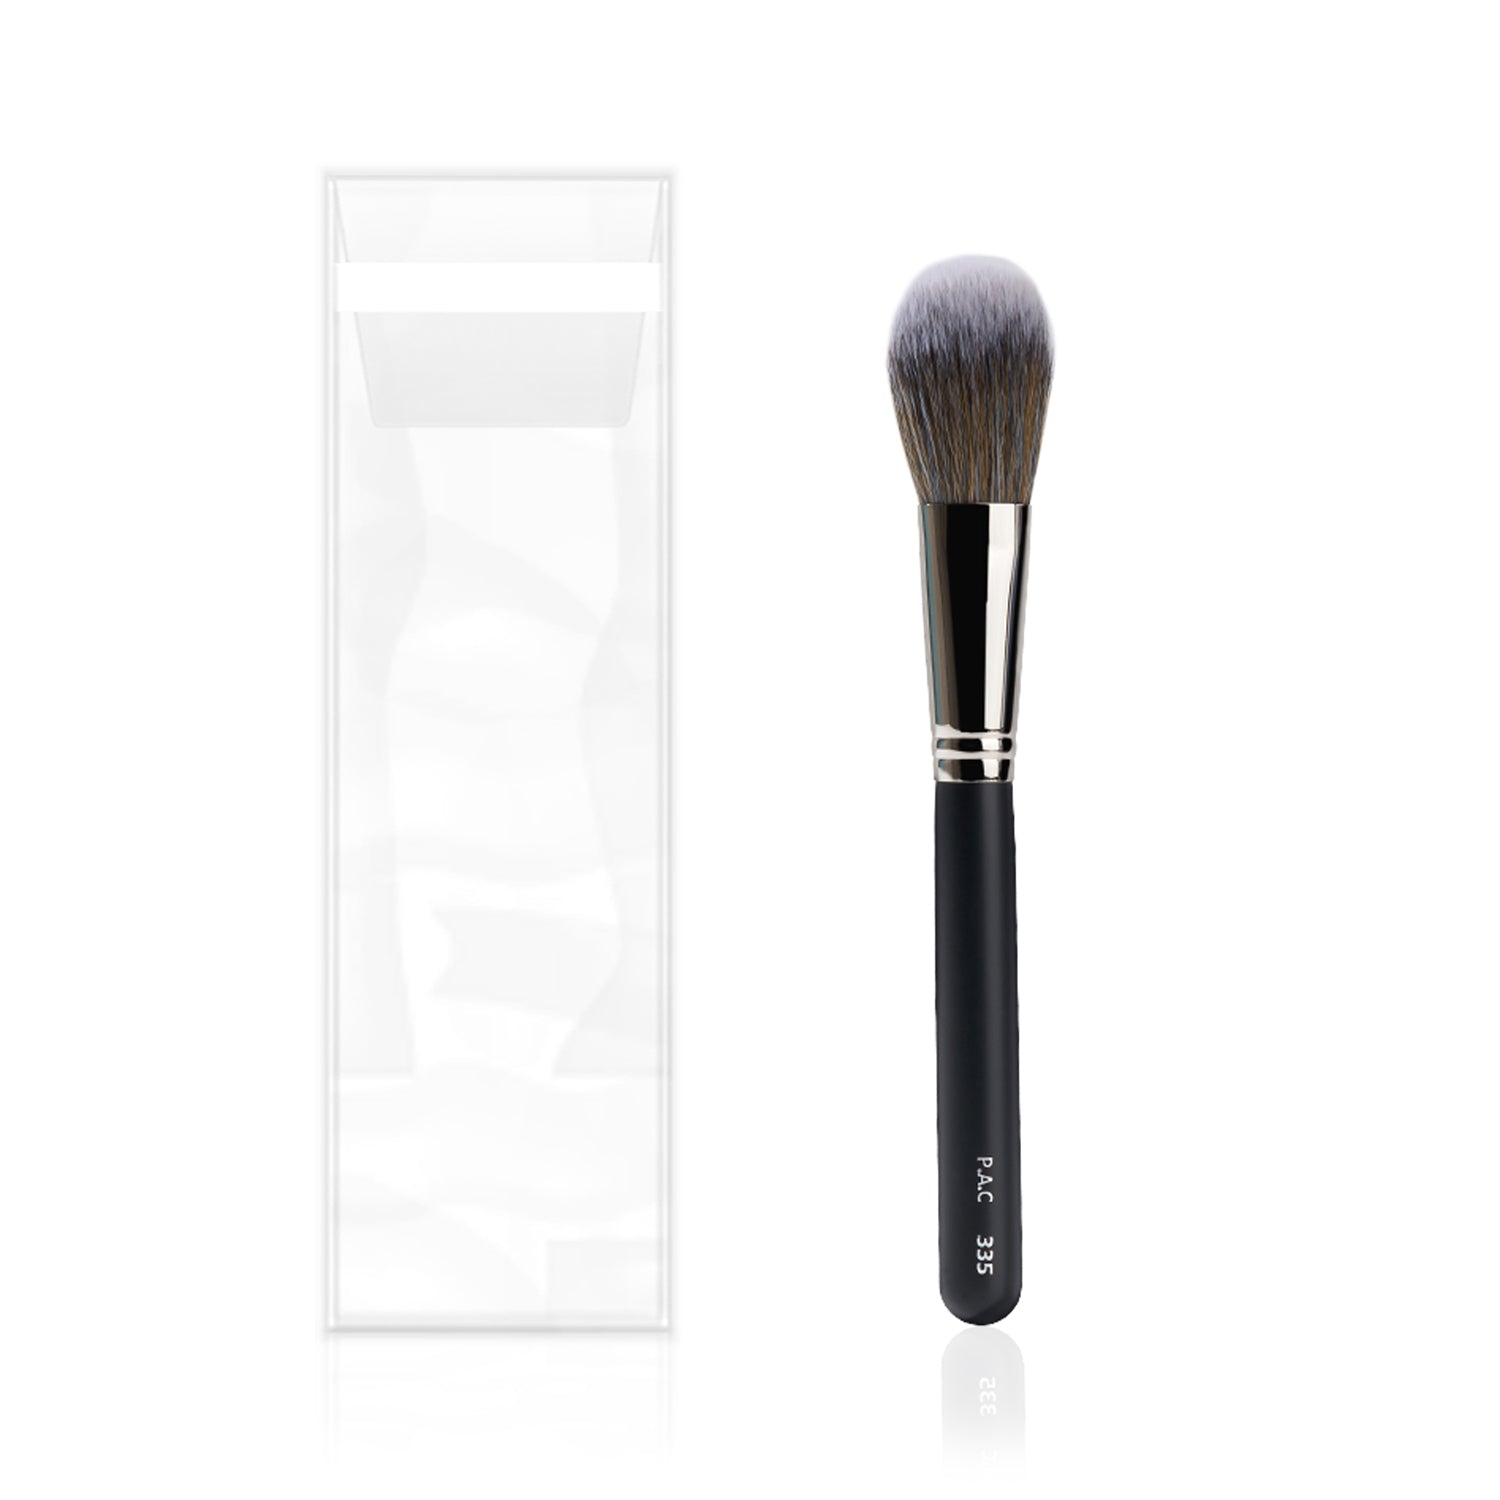 PAC Cosmetics Blush Brush 335